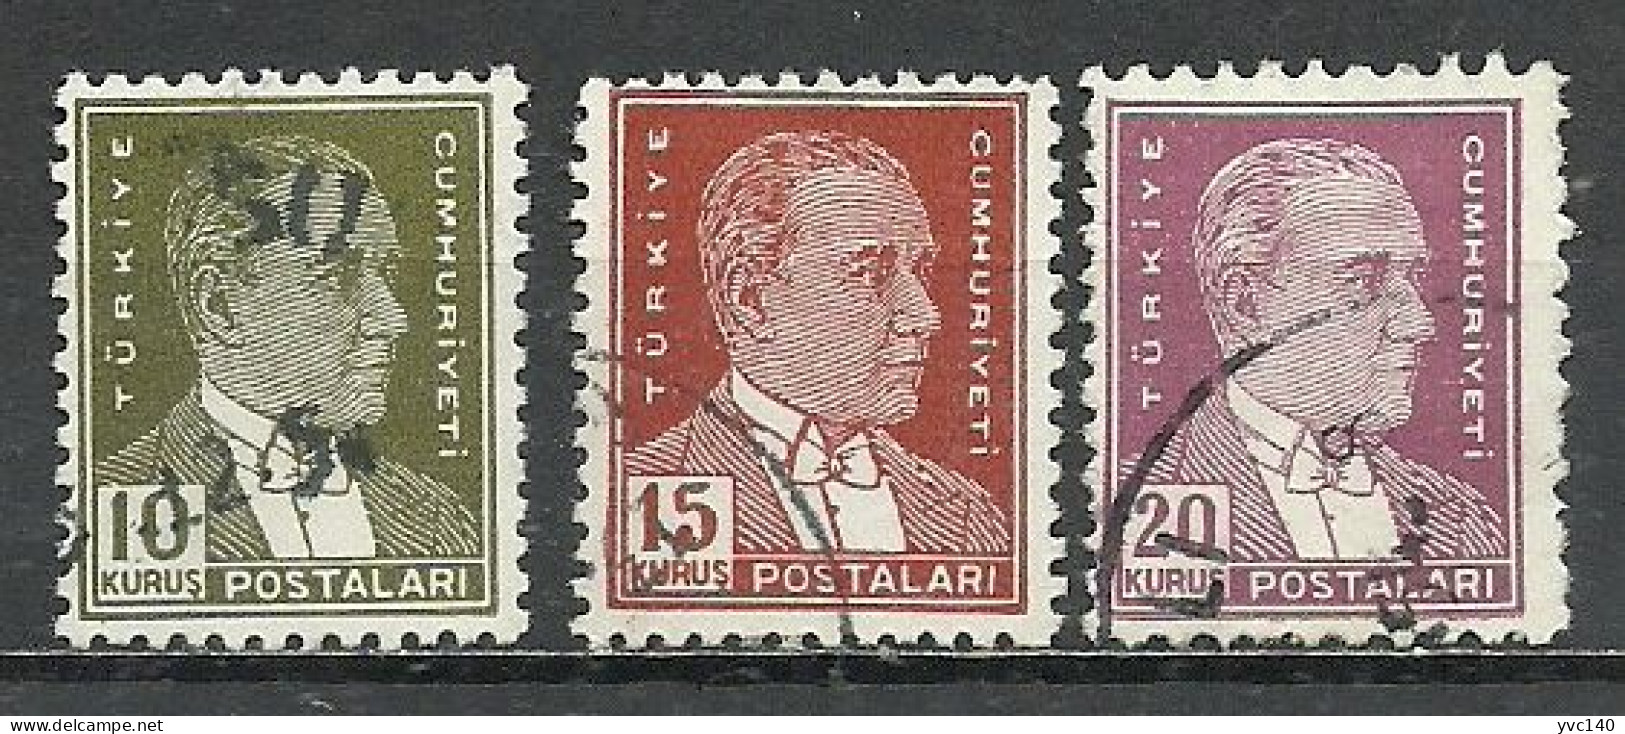 Turkey; 1953 8th Ataturk Issue Stamps - Gebraucht